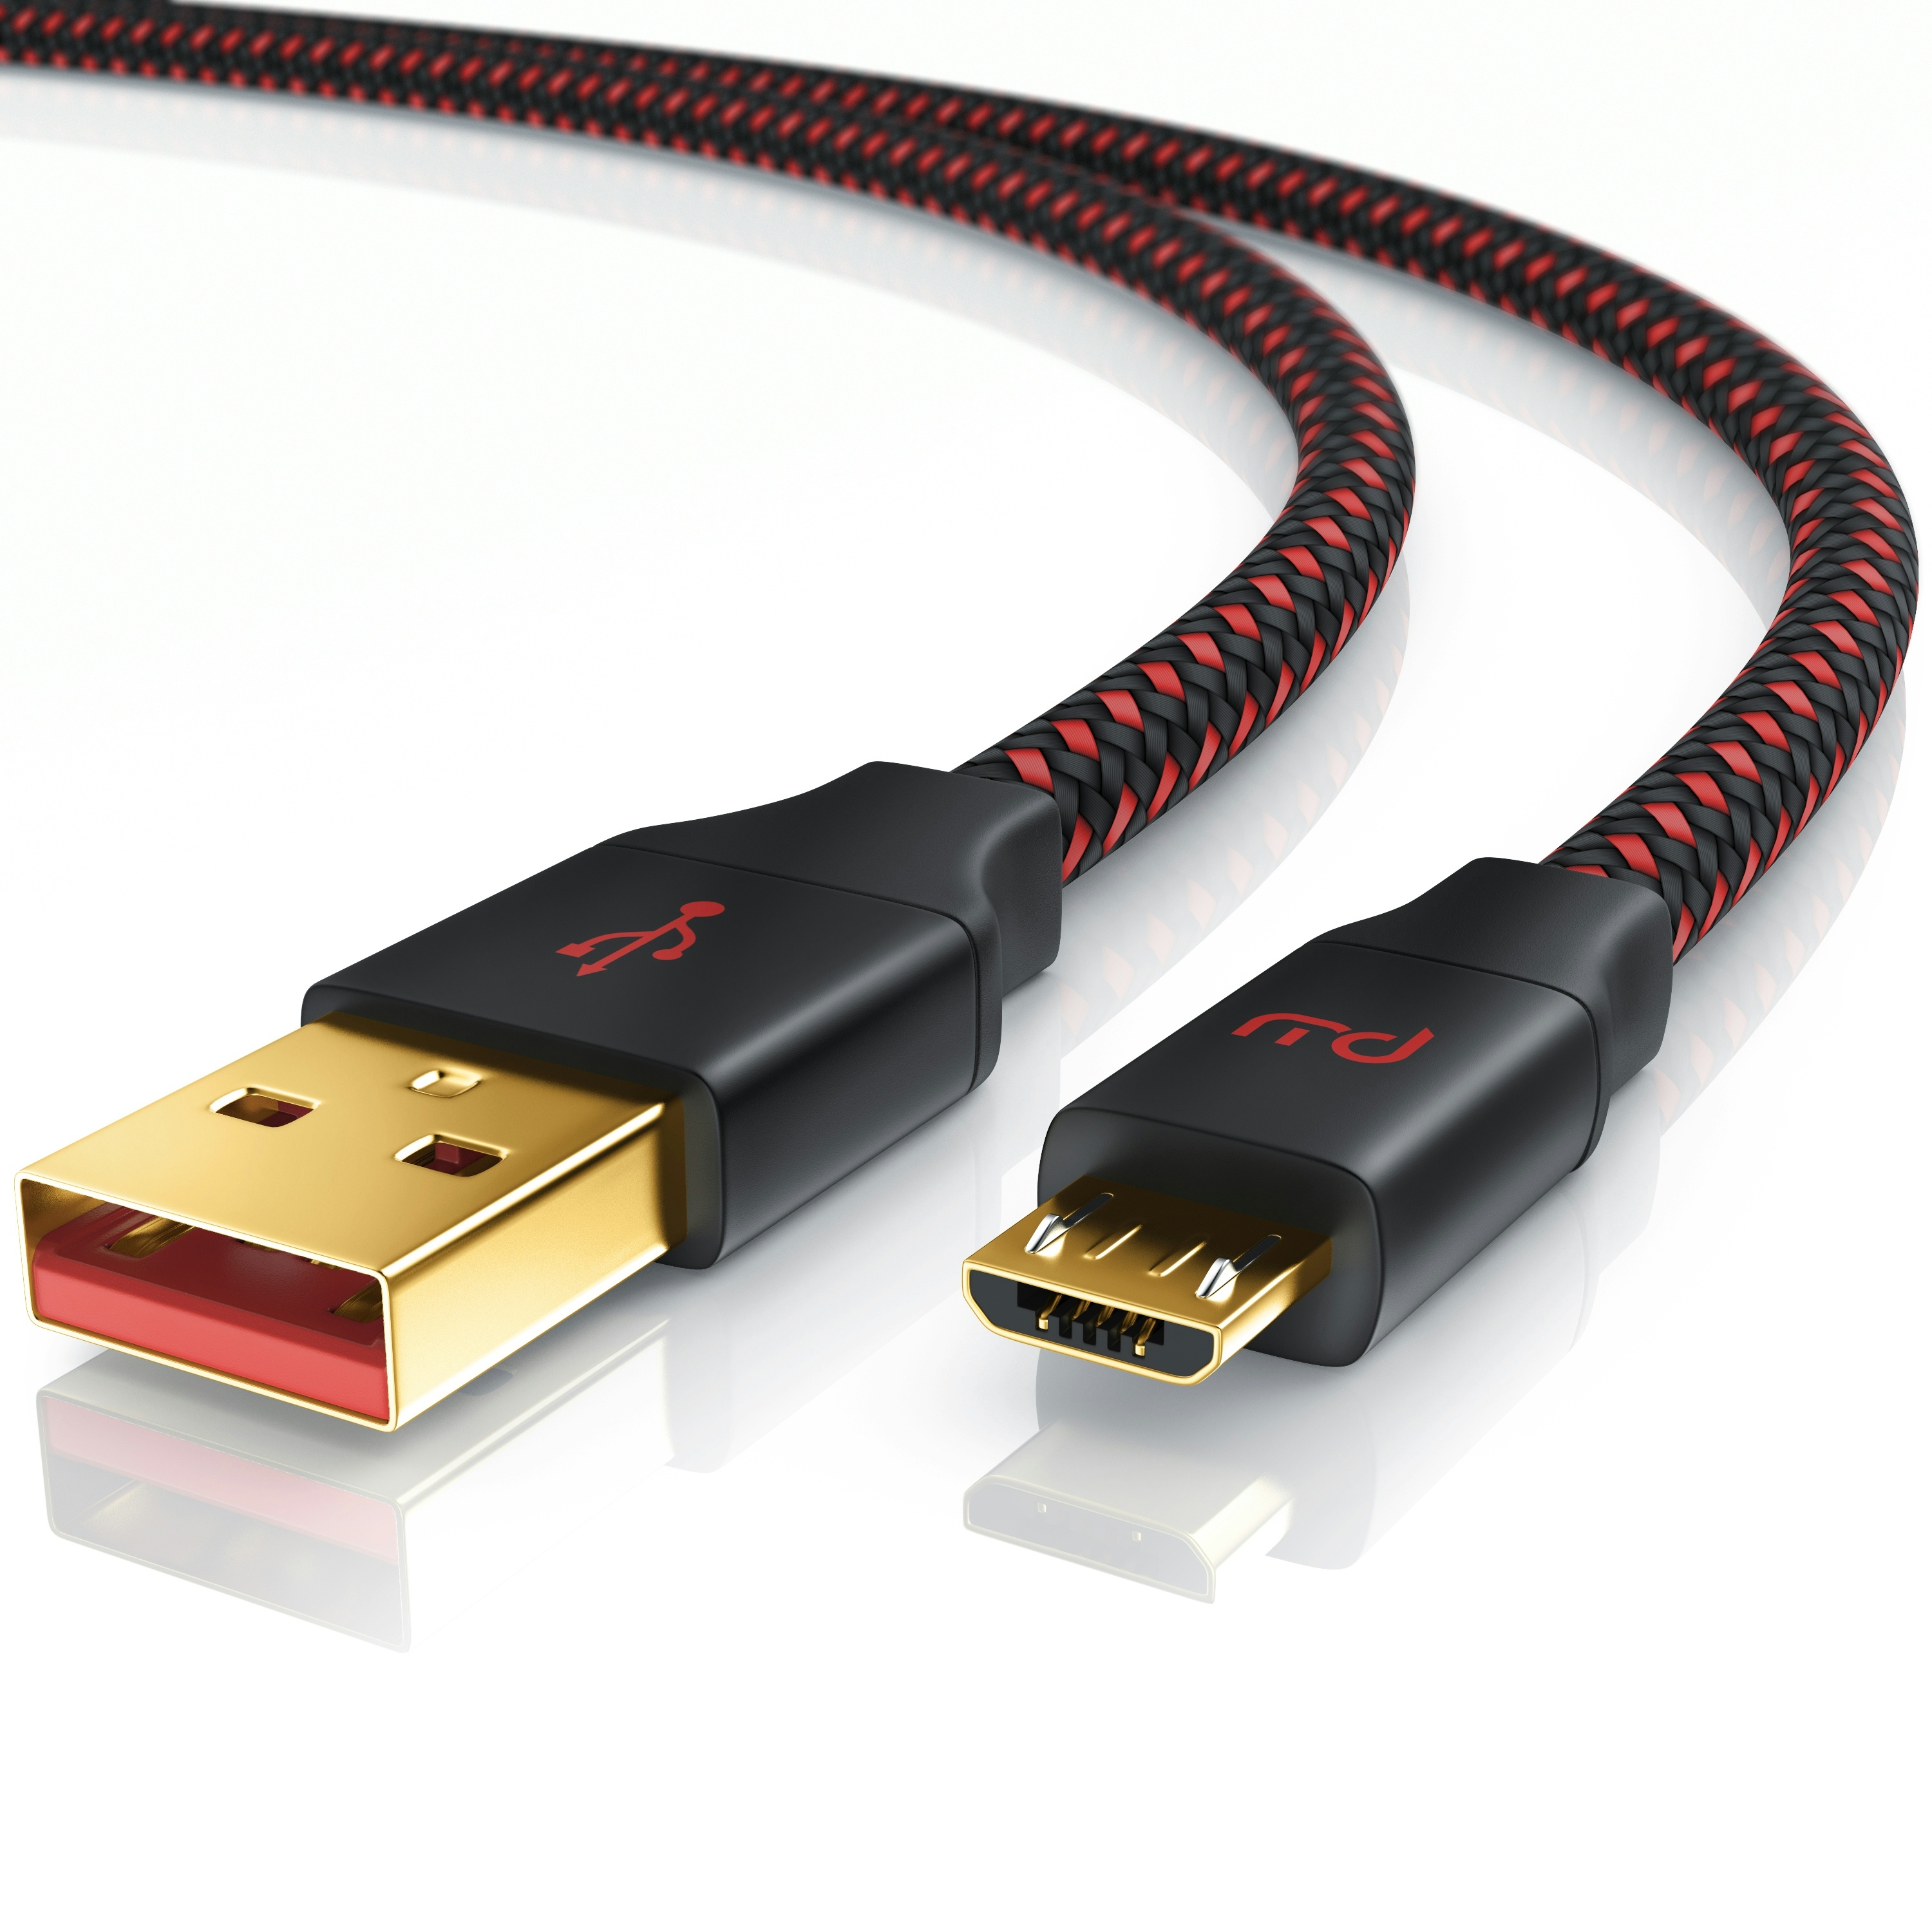 Primewire Micro-USB 2.0 zu USB Typ A Kabel, UltimateCharge MicroUSB 2.0 Schnellladekabel mit Datenübertragung - 2m